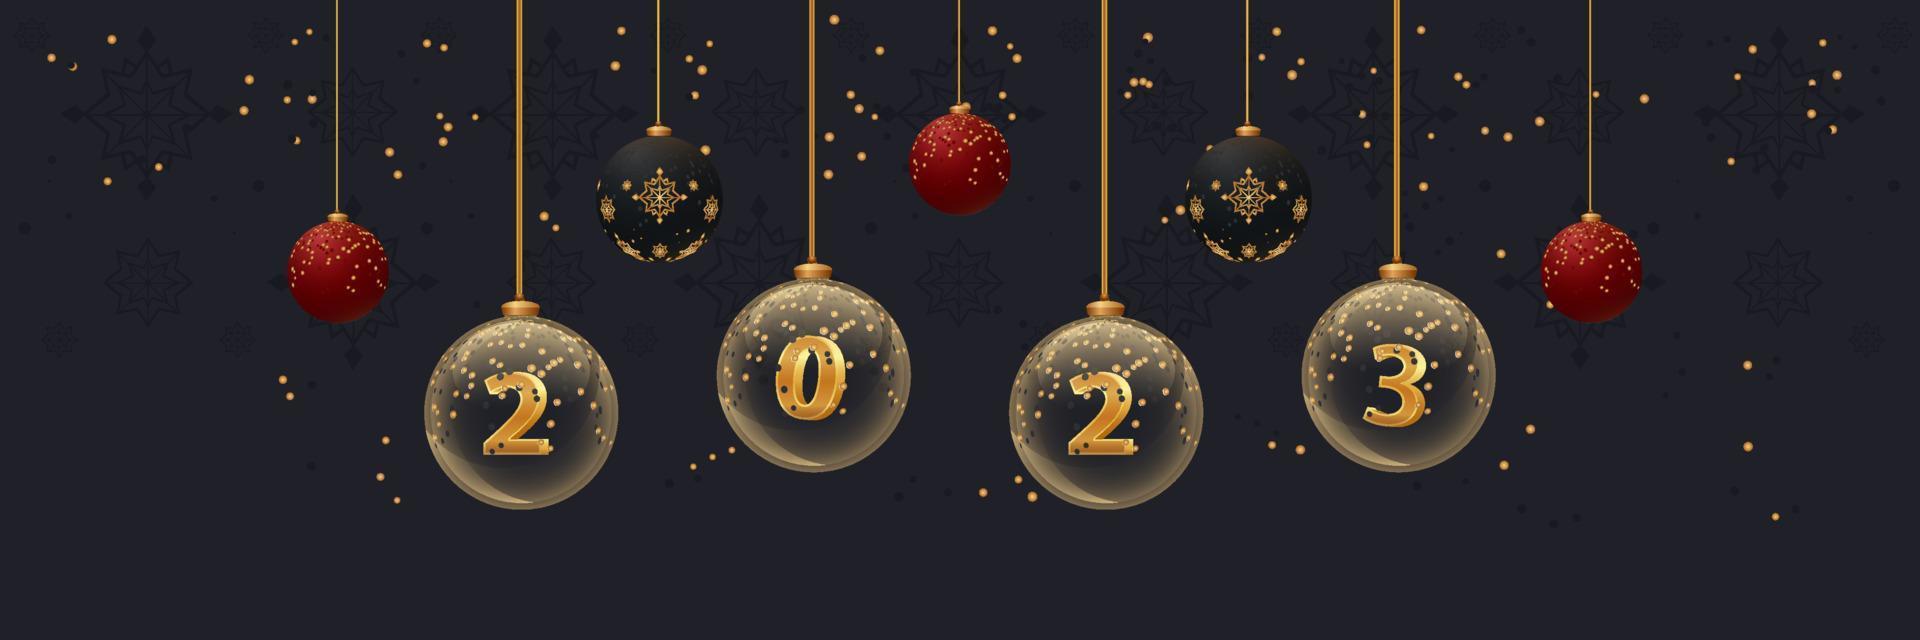 2023 Neujahrsbanner auf dunklem Hintergrund. Weihnachtsflyer mit Glaskugeln mit Zahlen und Glitzer. Grußkarten-Design-Vorlage vektor